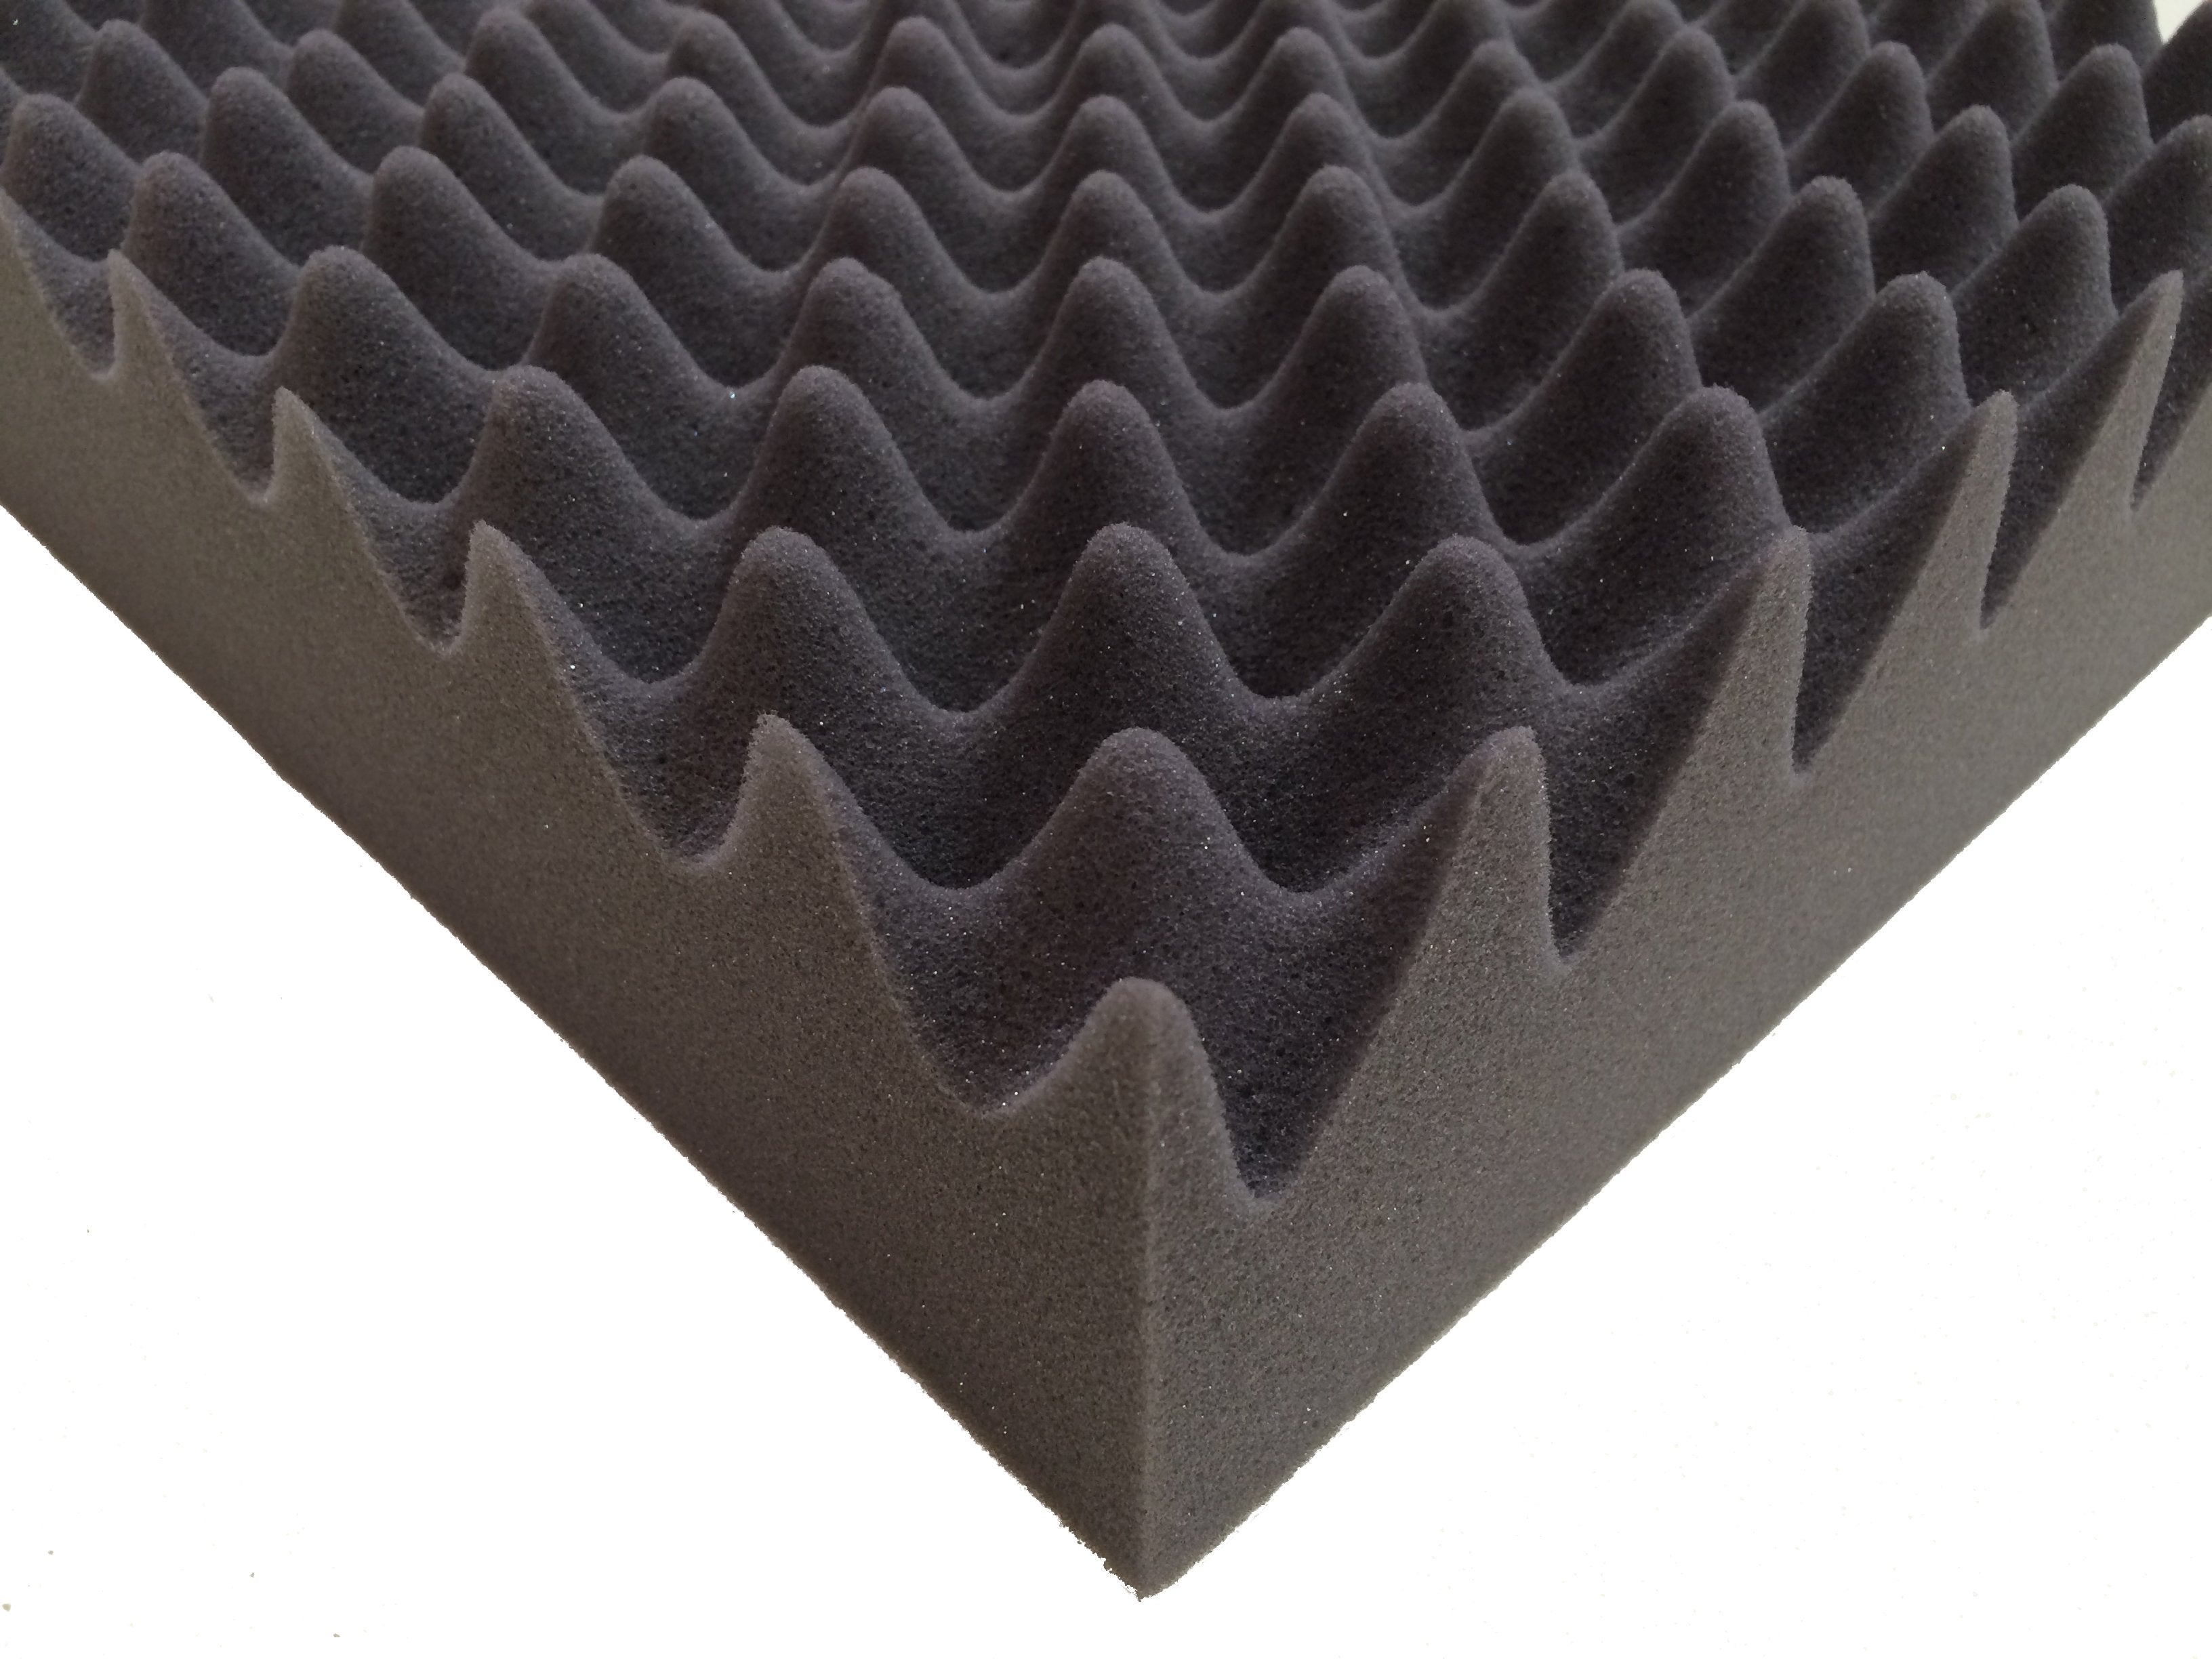 F.A.T. PRO Combo Acoustic Studio Foam Tile Kit - Advanced Acoustics